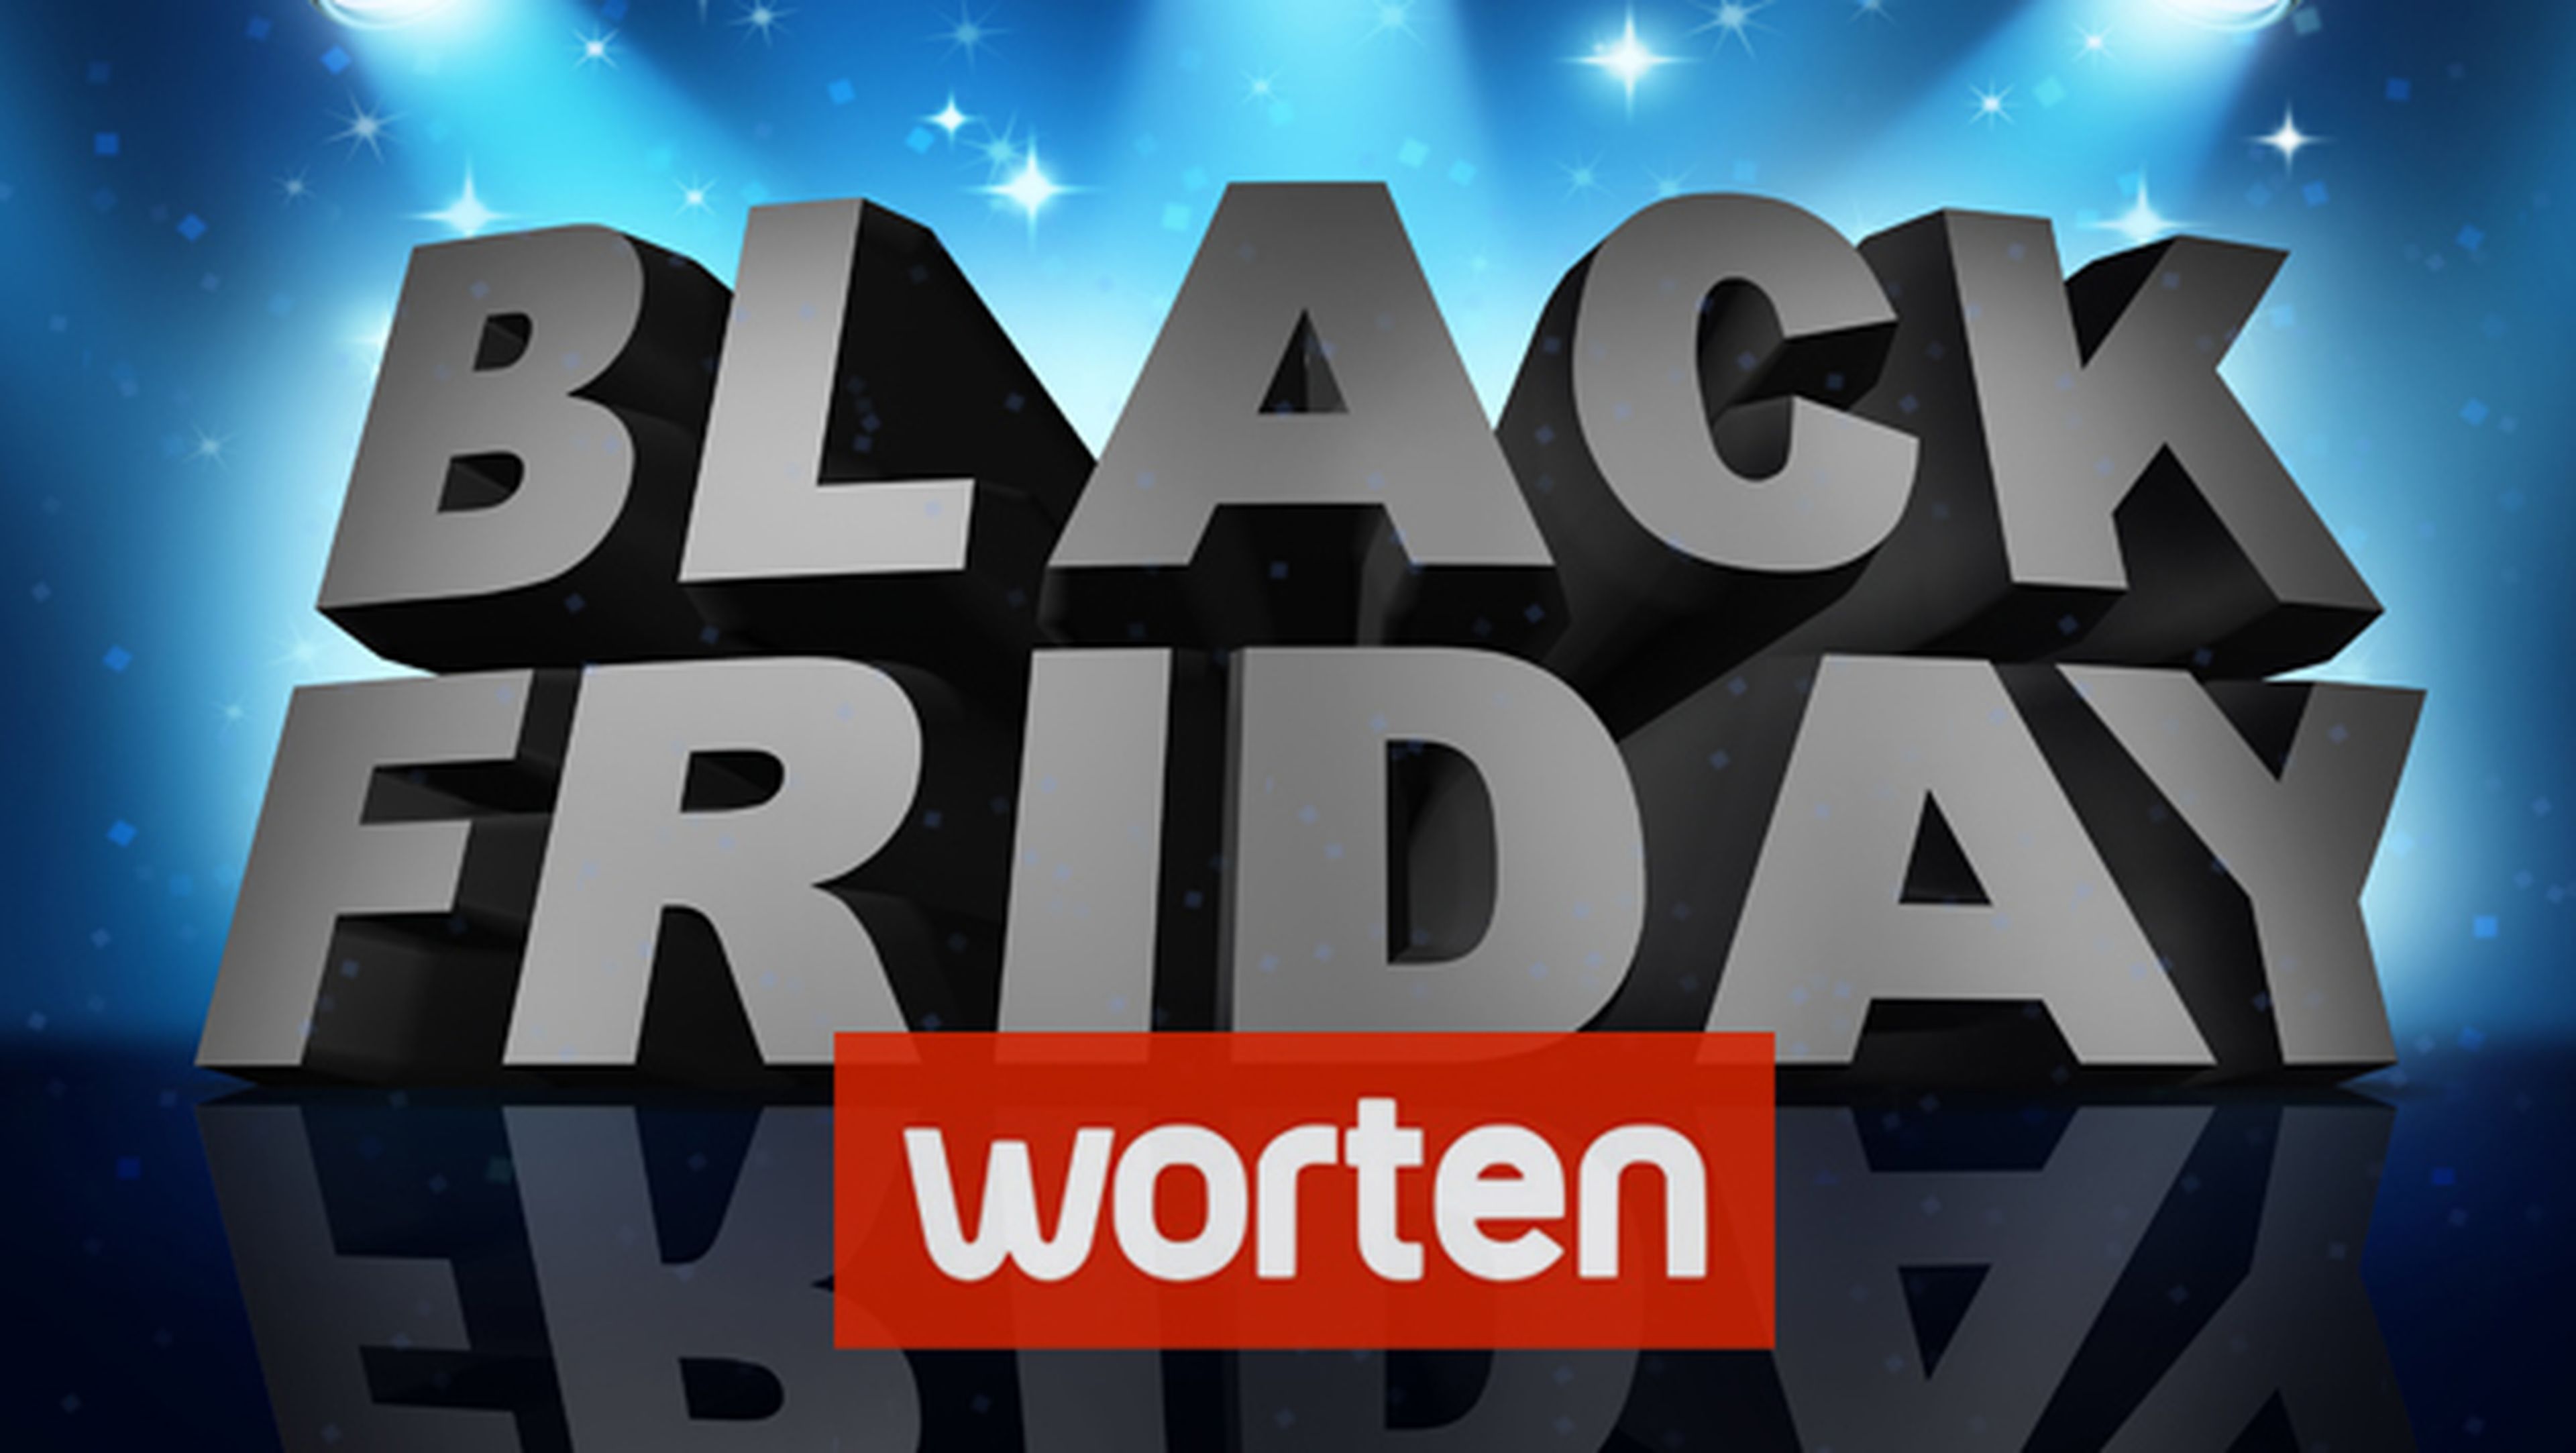 Black Friday Worten 2014: las mejores ofertas